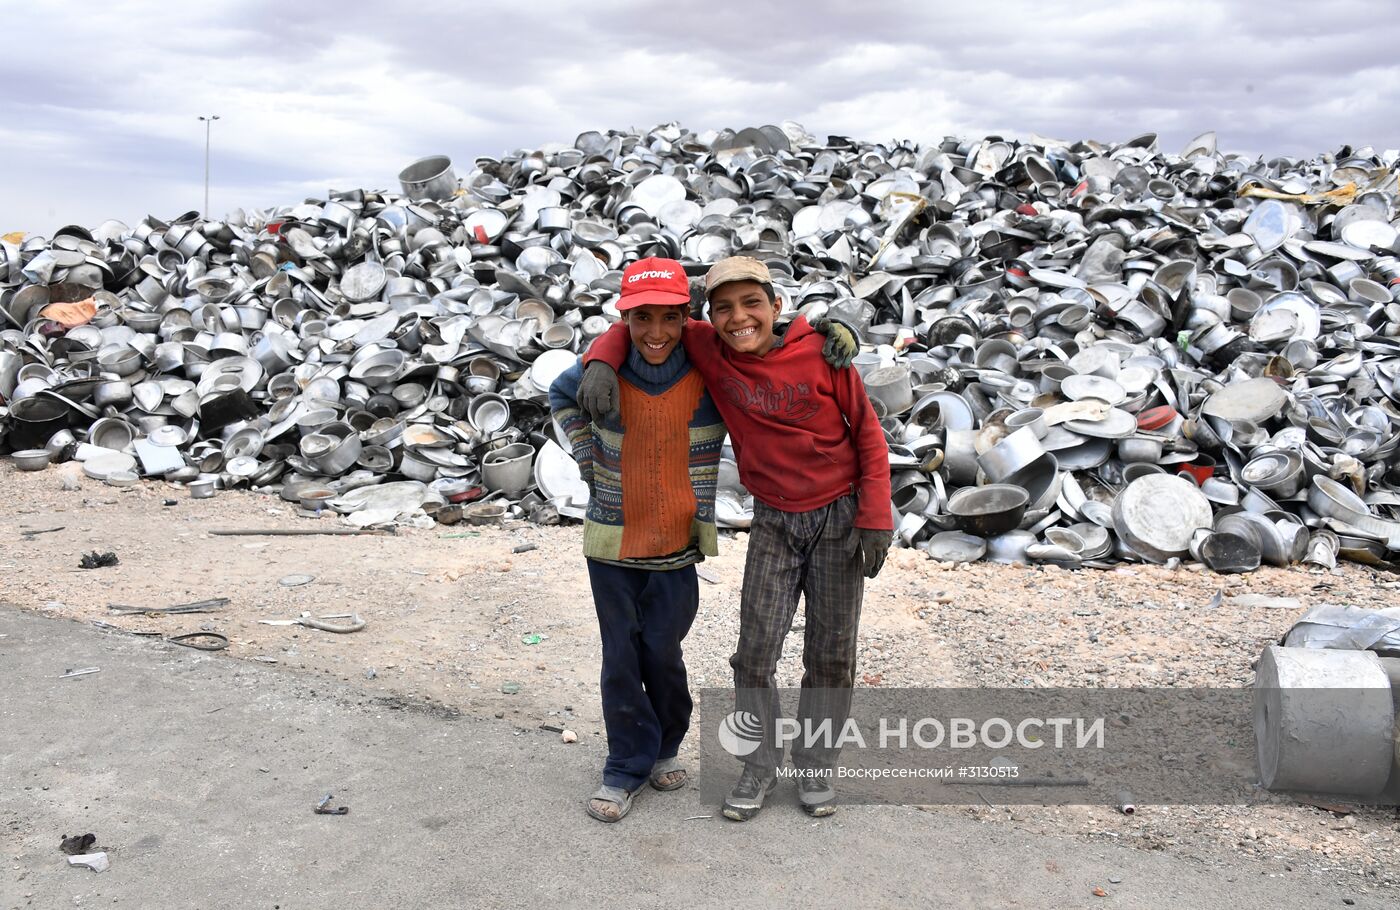 Частный завод по переработке меди и алюминия в пригороде Хомса